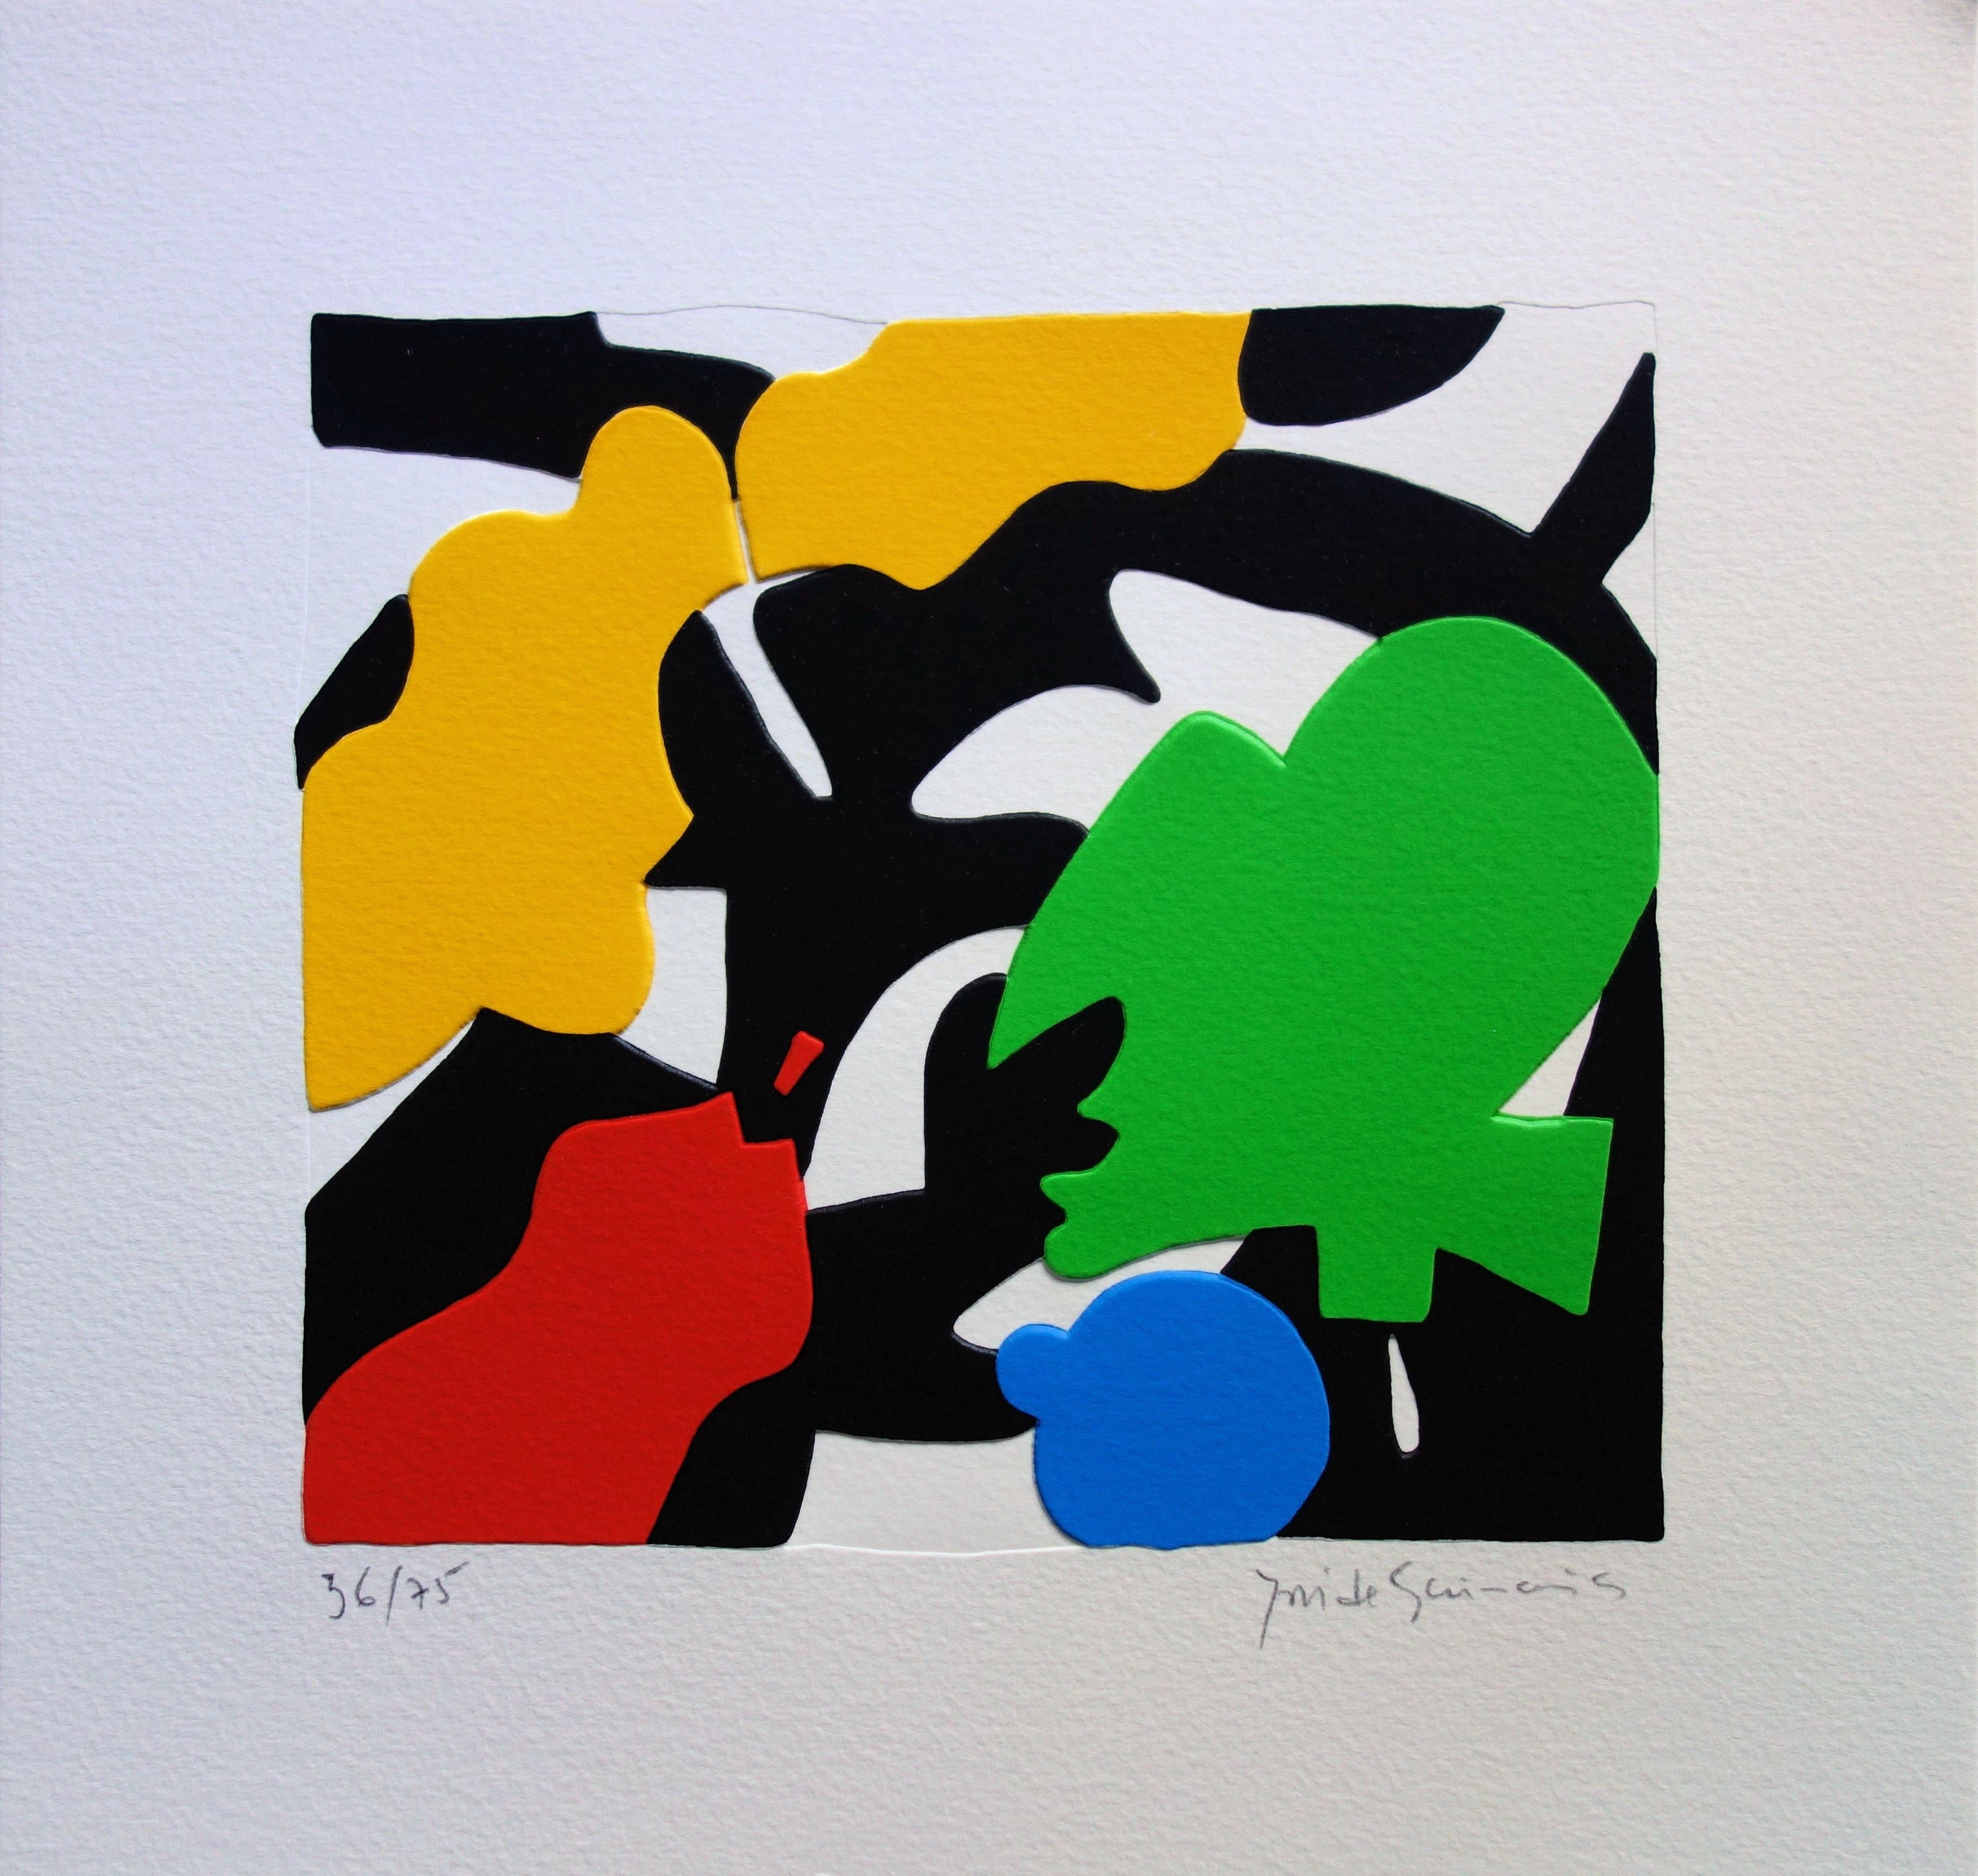 José de Guimaraes Abstract Print - Mimesis : Color Forms - Original handsigned screen print / 75ex